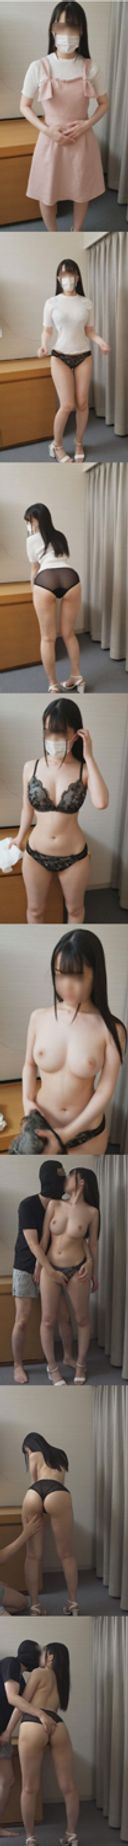 [獨家原創]日本 一個18歲的大學生，臀部從腰部周圍有色情曲線，還有一個美麗的女孩，擁有美麗的年輕美麗的皮膚，美麗的乳房和一個美麗的女孩（缺點有點糟糕） 一生中至少想舔一次的裸體